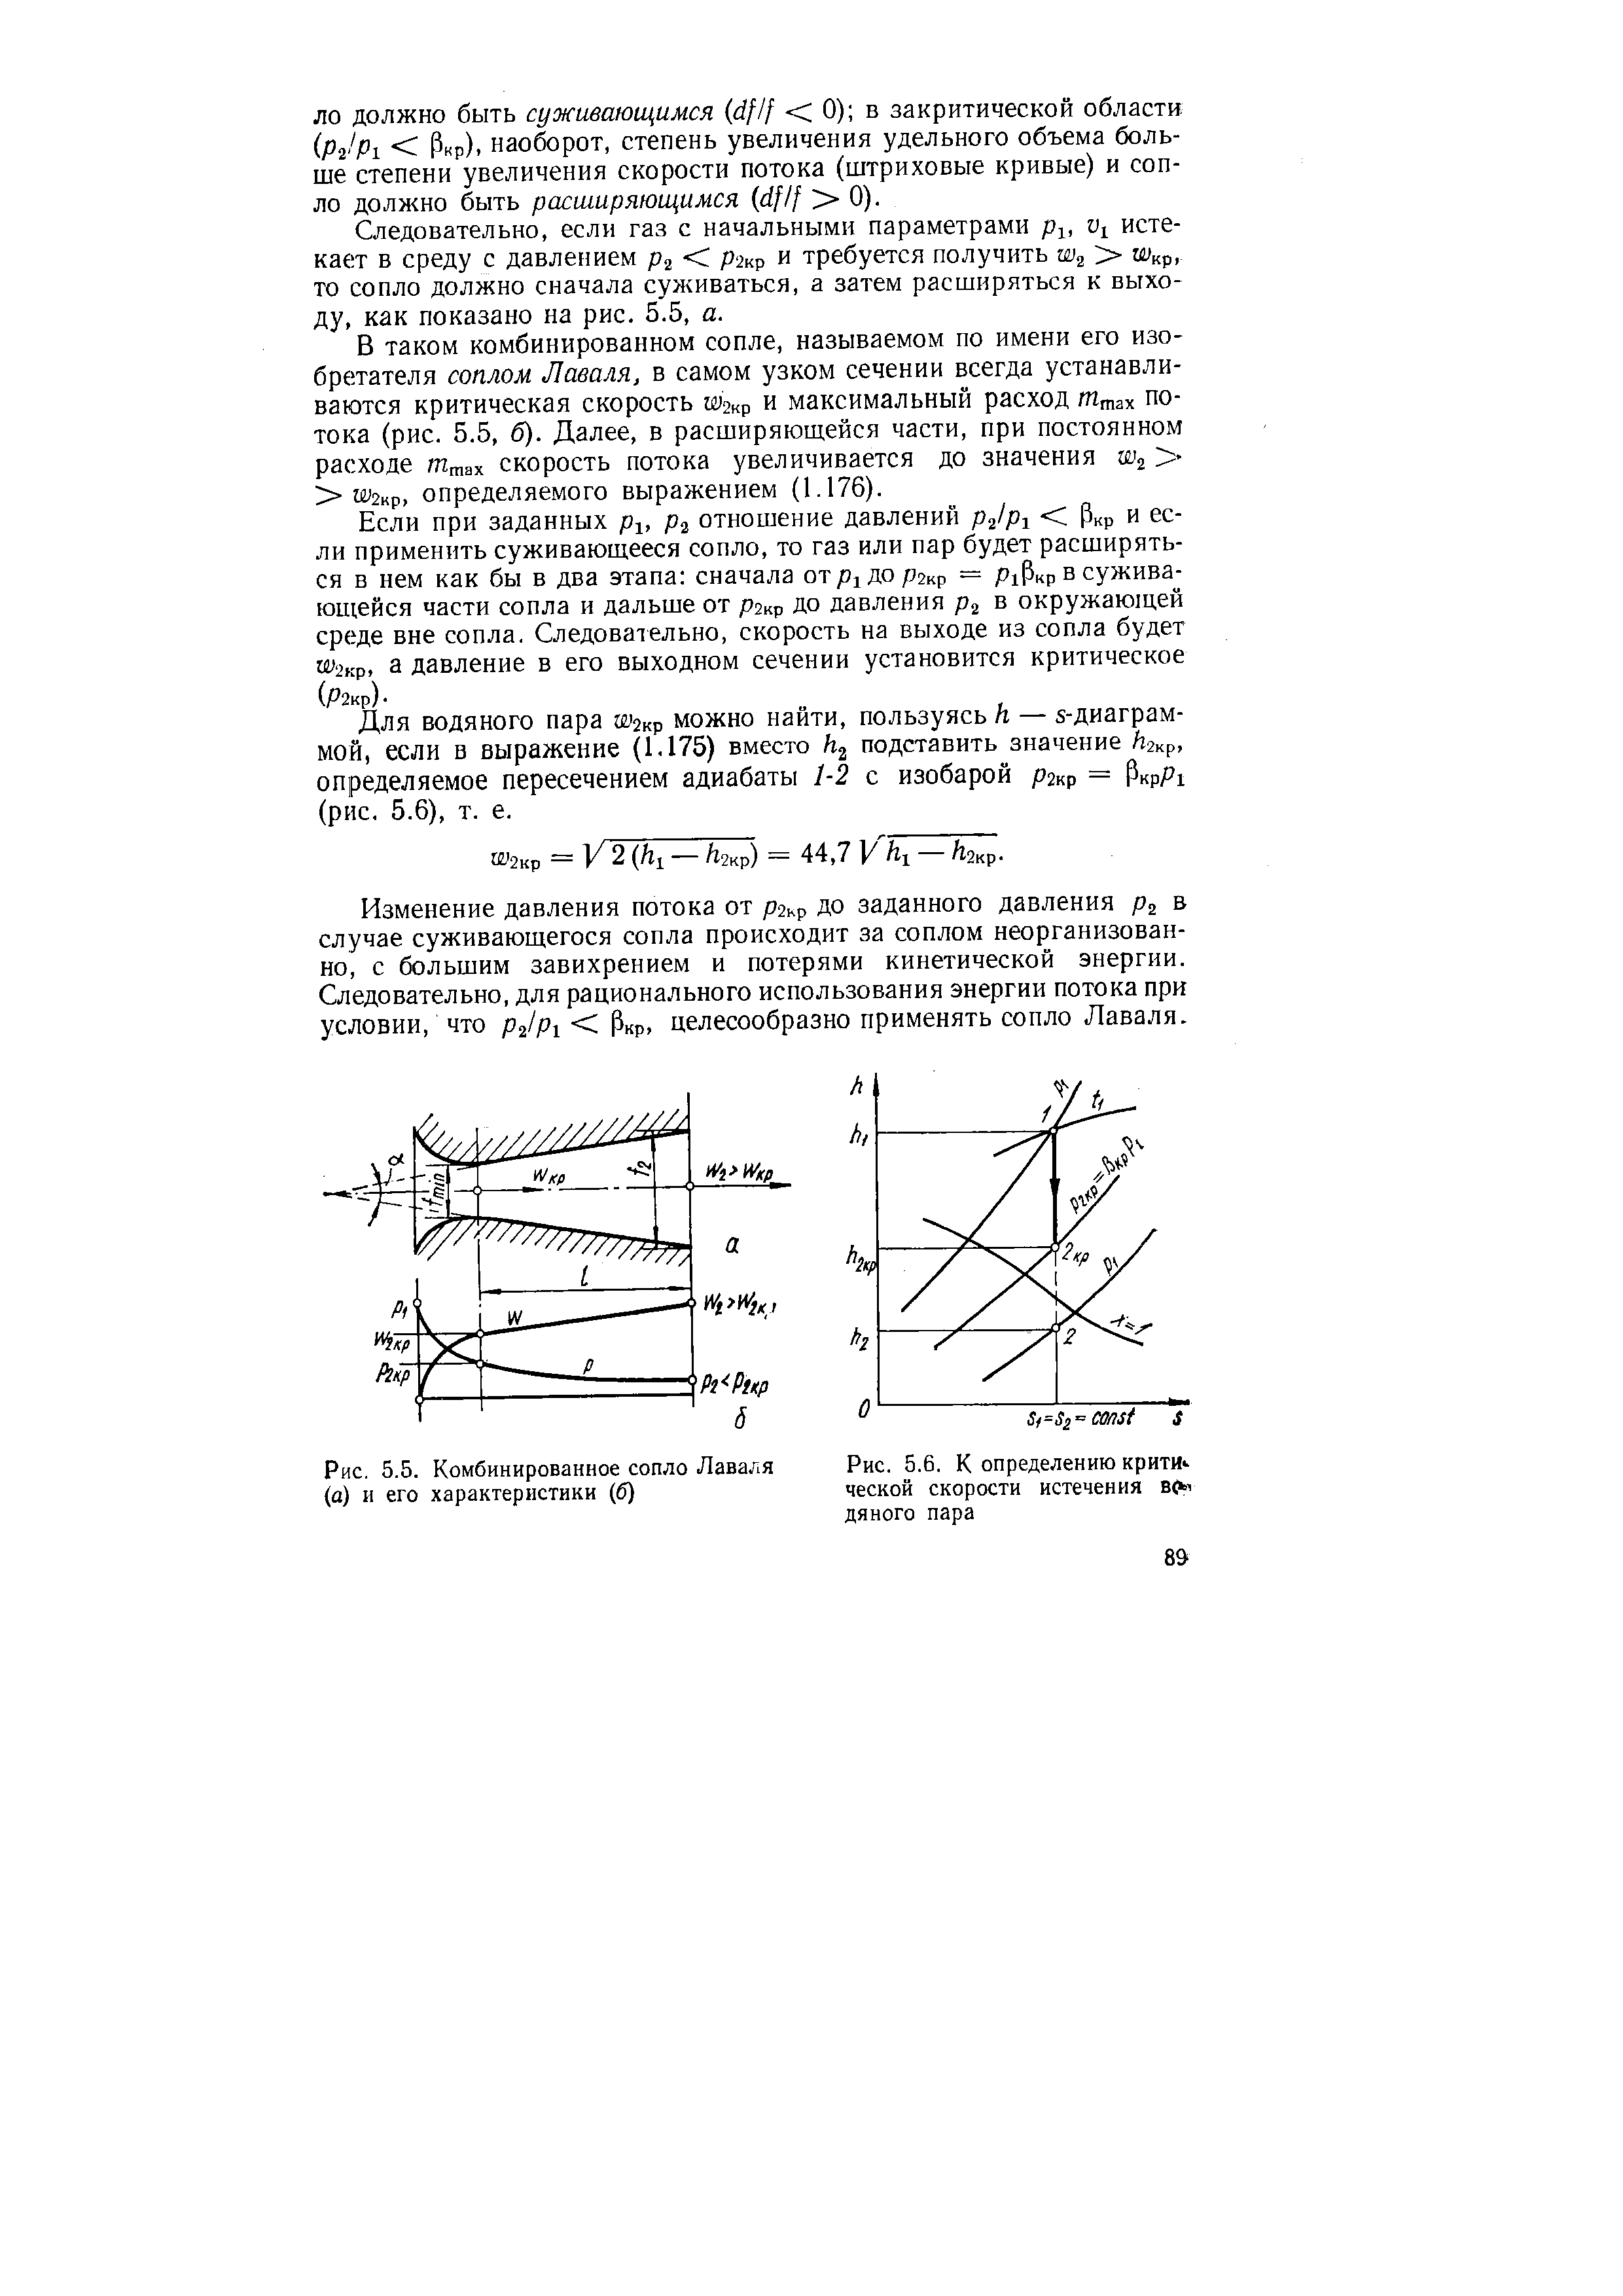 Рис. 5.5. Комбинированное сопло Лаваля (а) и его характеристики (б)
